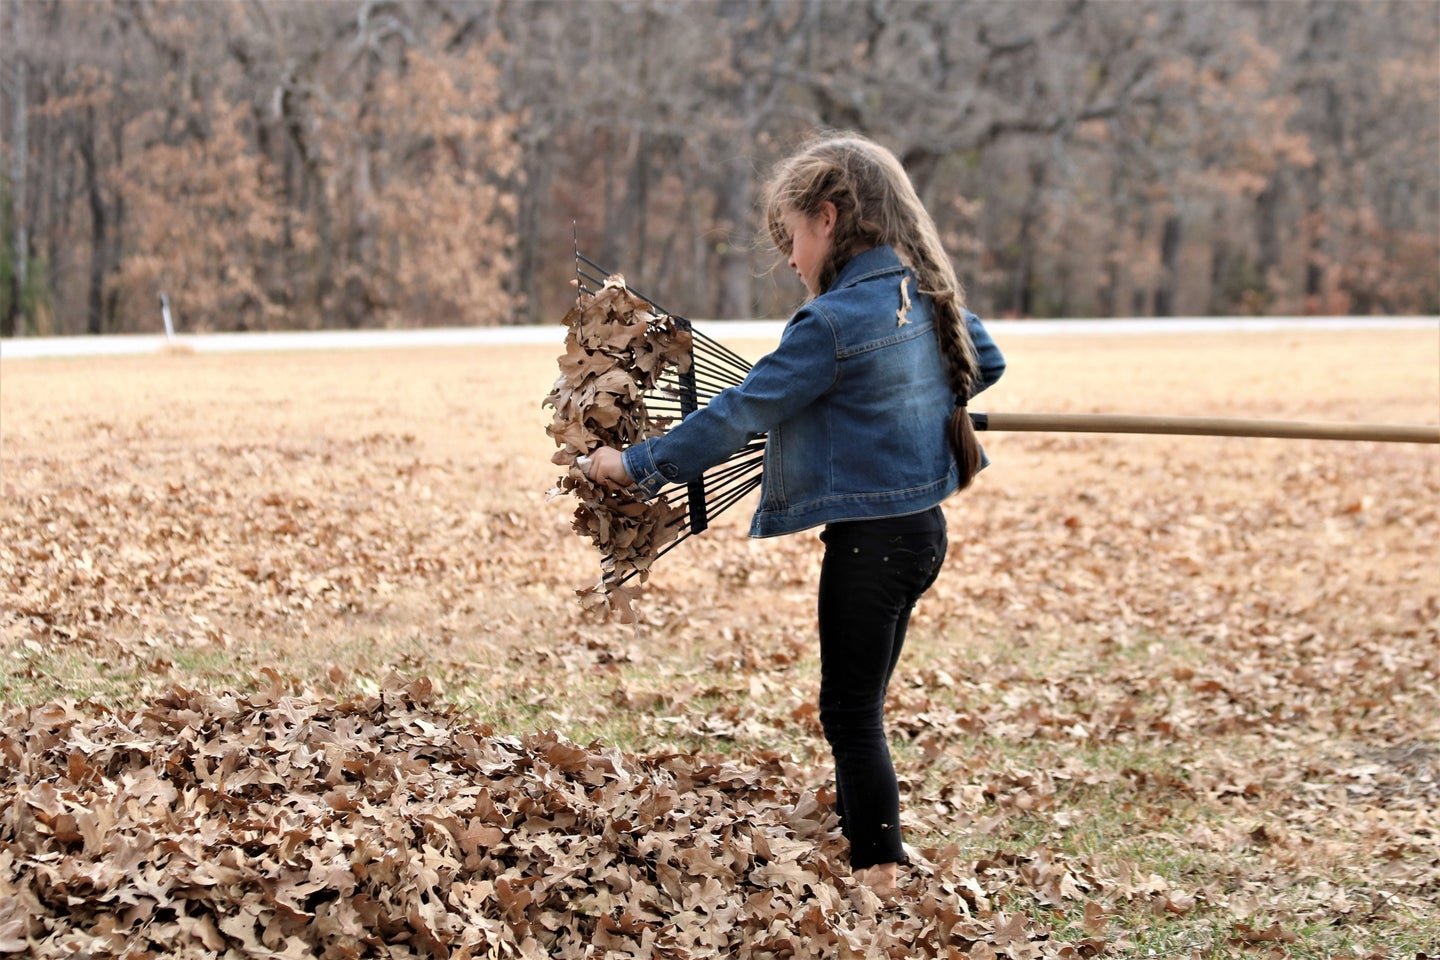 Hate raking leaves? There’s an easier method.